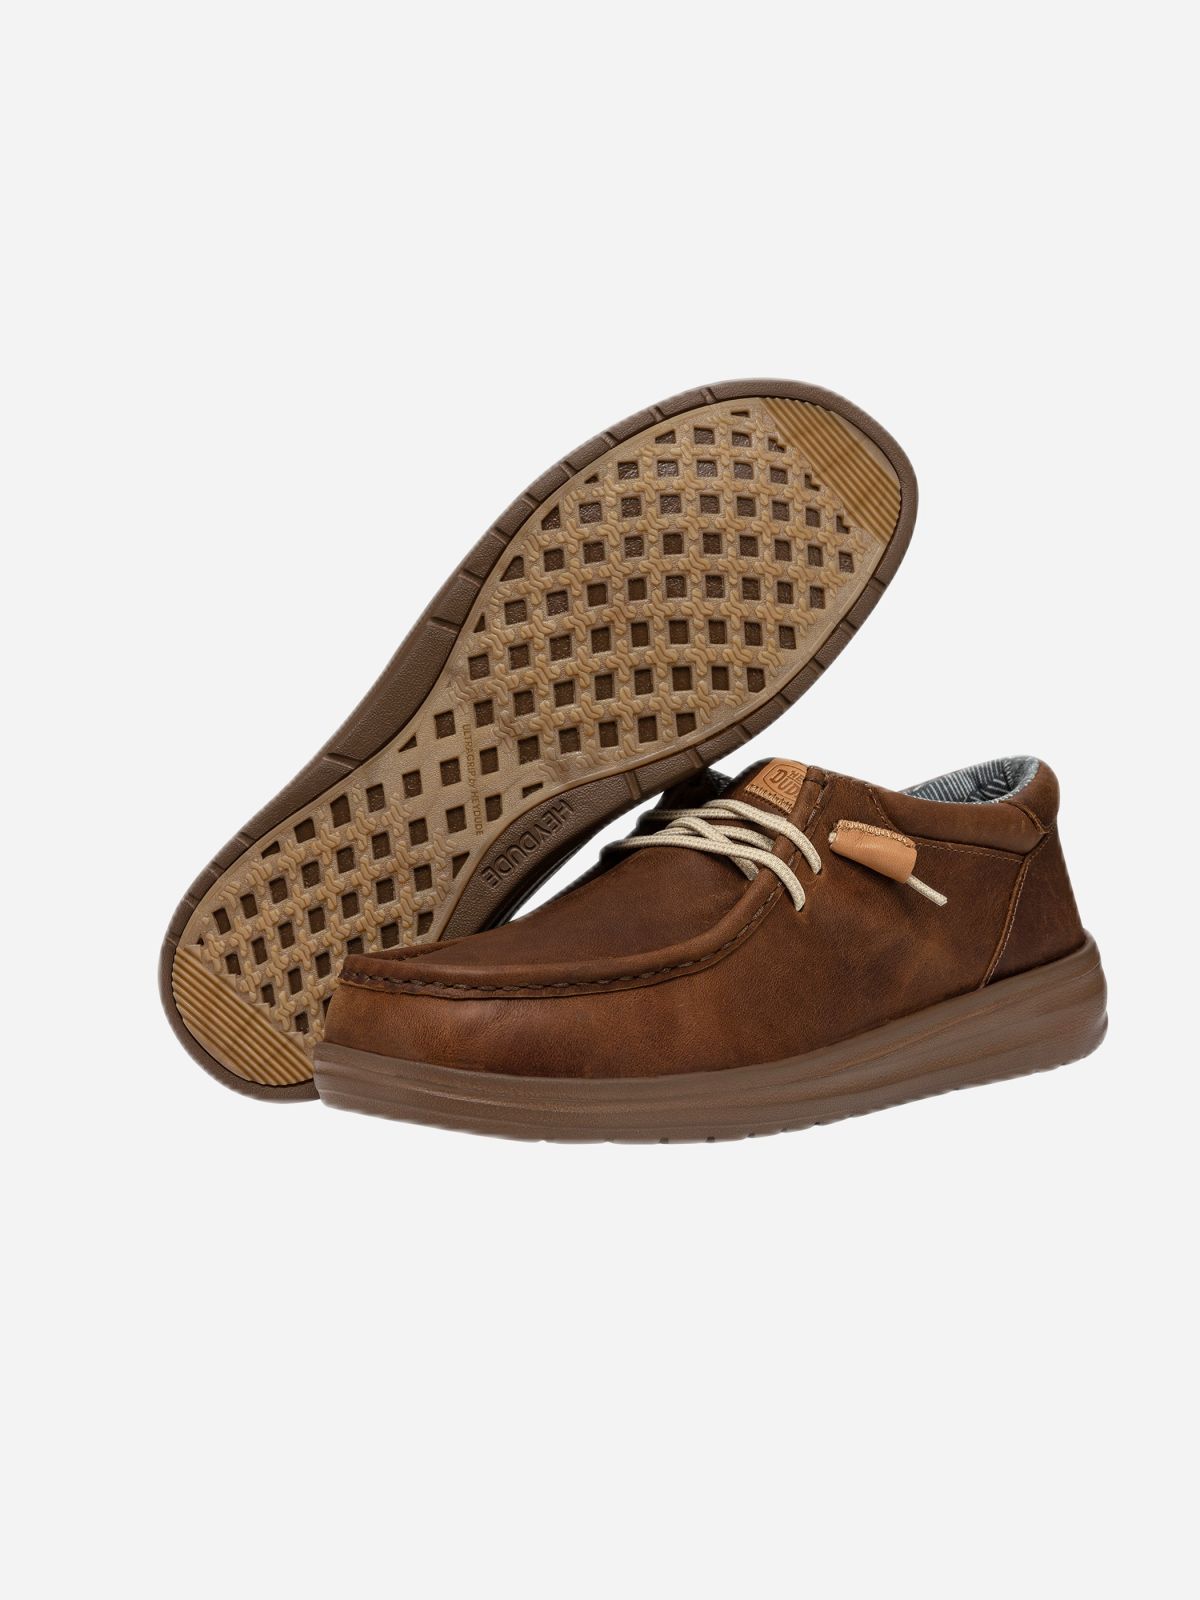  נעלי סניקרס סליפ און Wally Grip Craft Leat / גברים של HEY DUDE